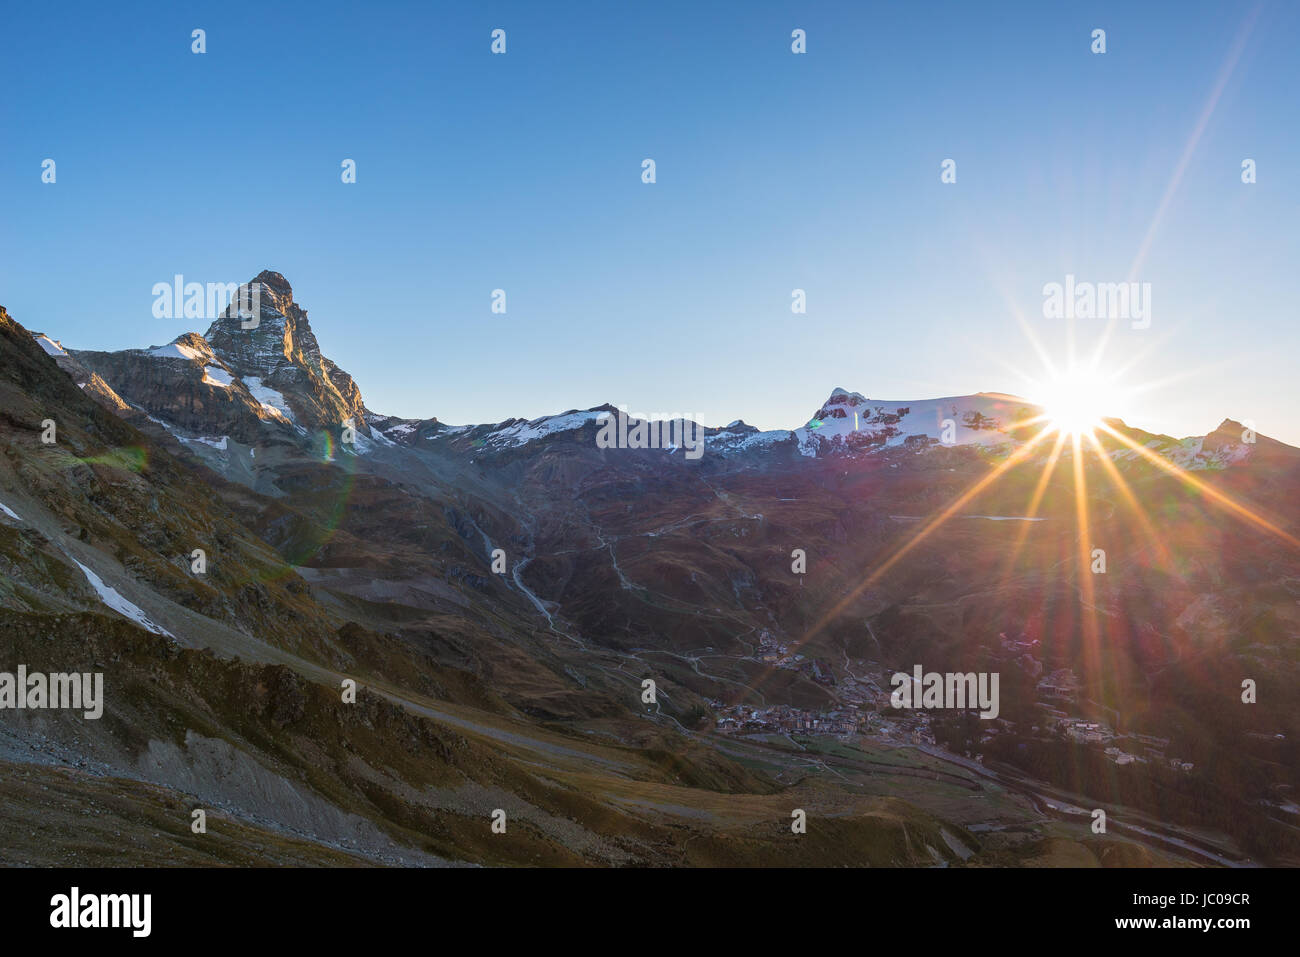 Vue aérienne au lever de Breuil Cervinia et Cervin ou Matterhorn peak, célèbre station de ski en Vallée d'aoste, Italie. Banque D'Images